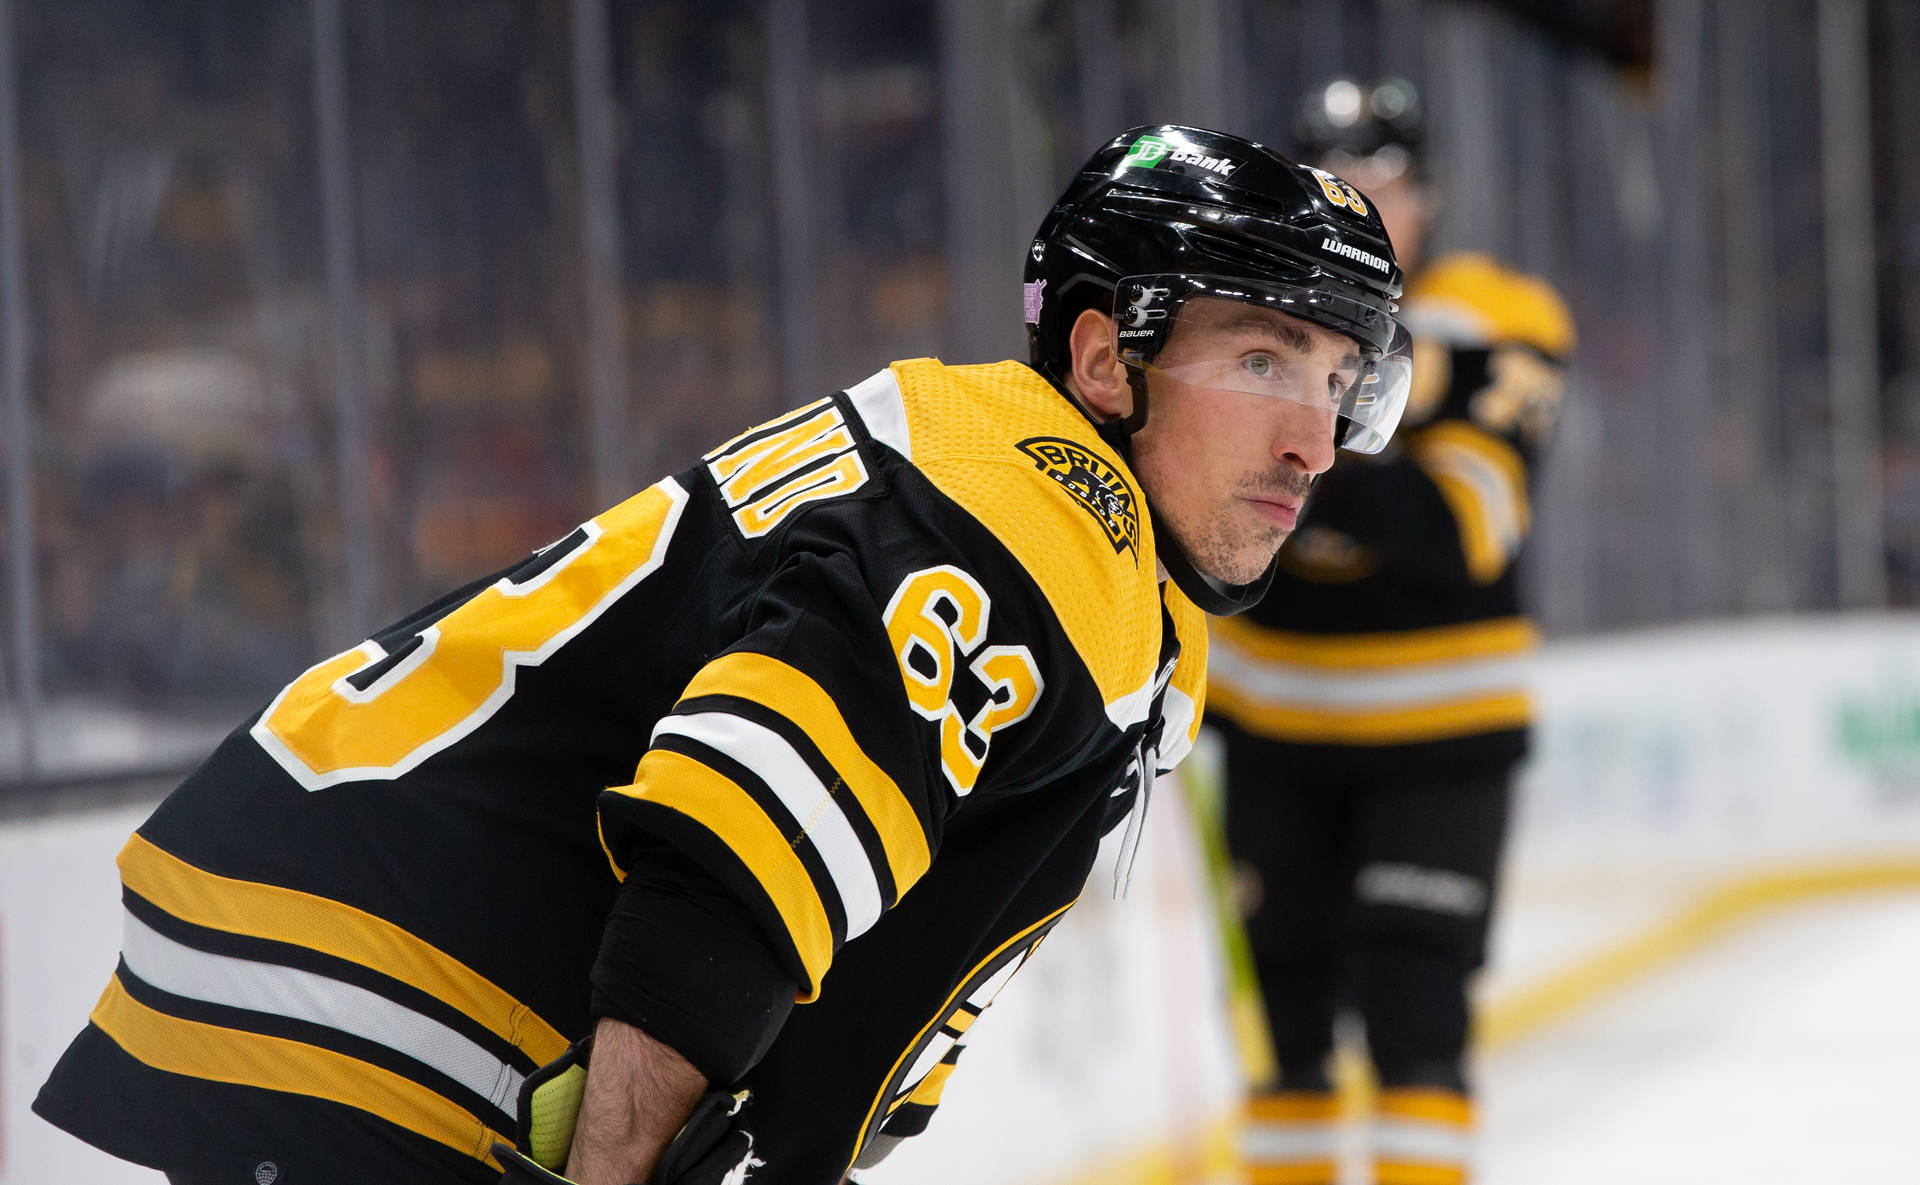 Bradmarchand, Boston Bruins - Fondos De Pantalla Para Computadora O Celular. Fondo de pantalla